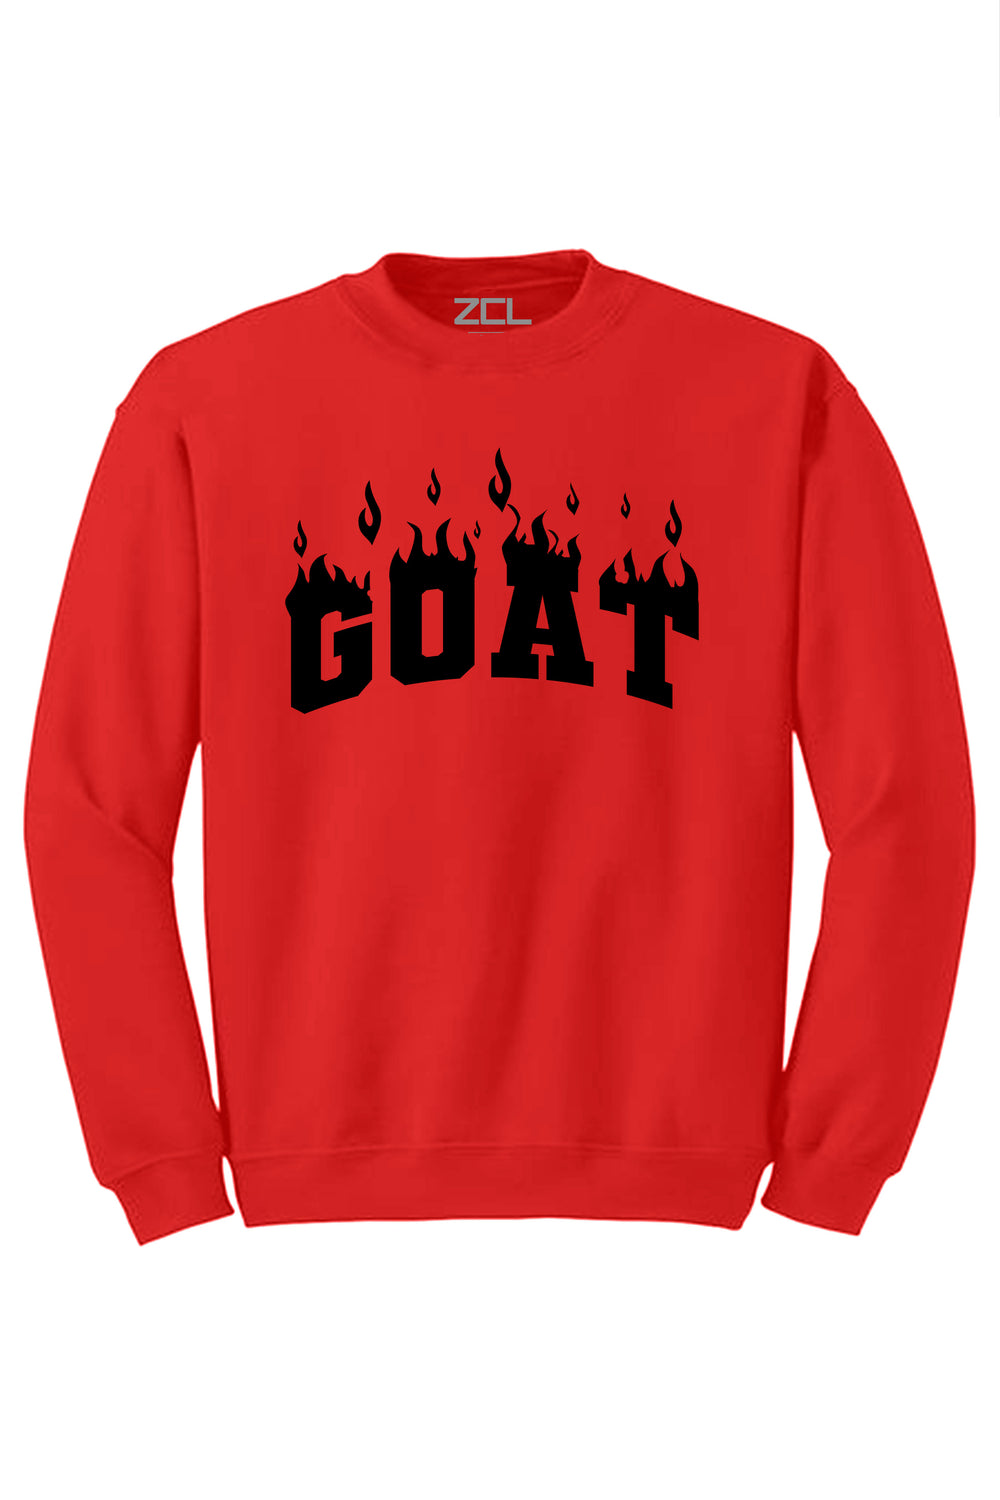 Goat Flame Crewneck Sweatshirt (Black Logo) - Zamage